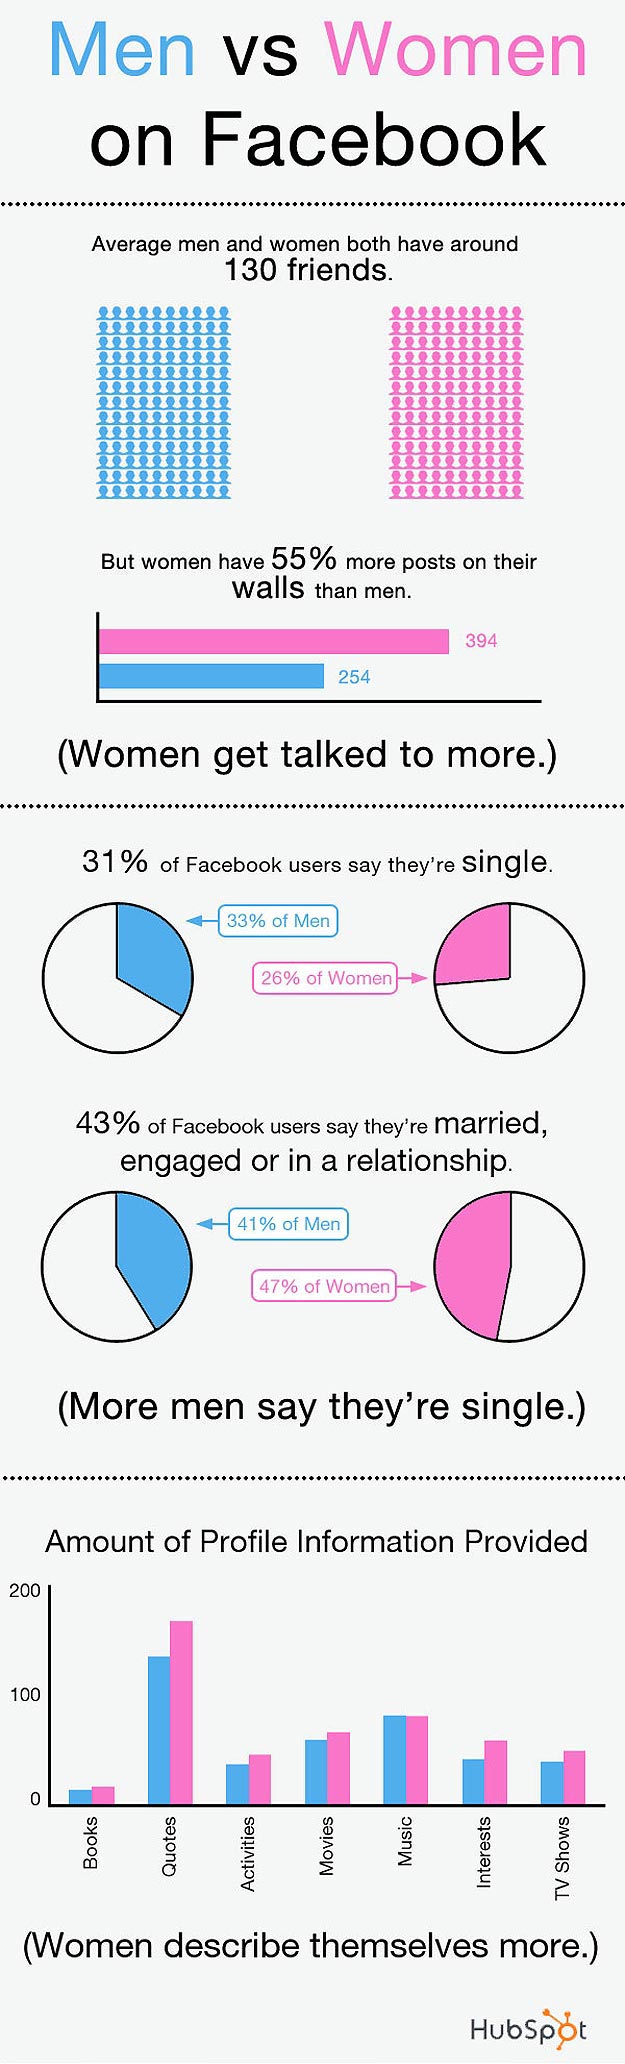 Gender Differences: Men vs. Women on Facebook